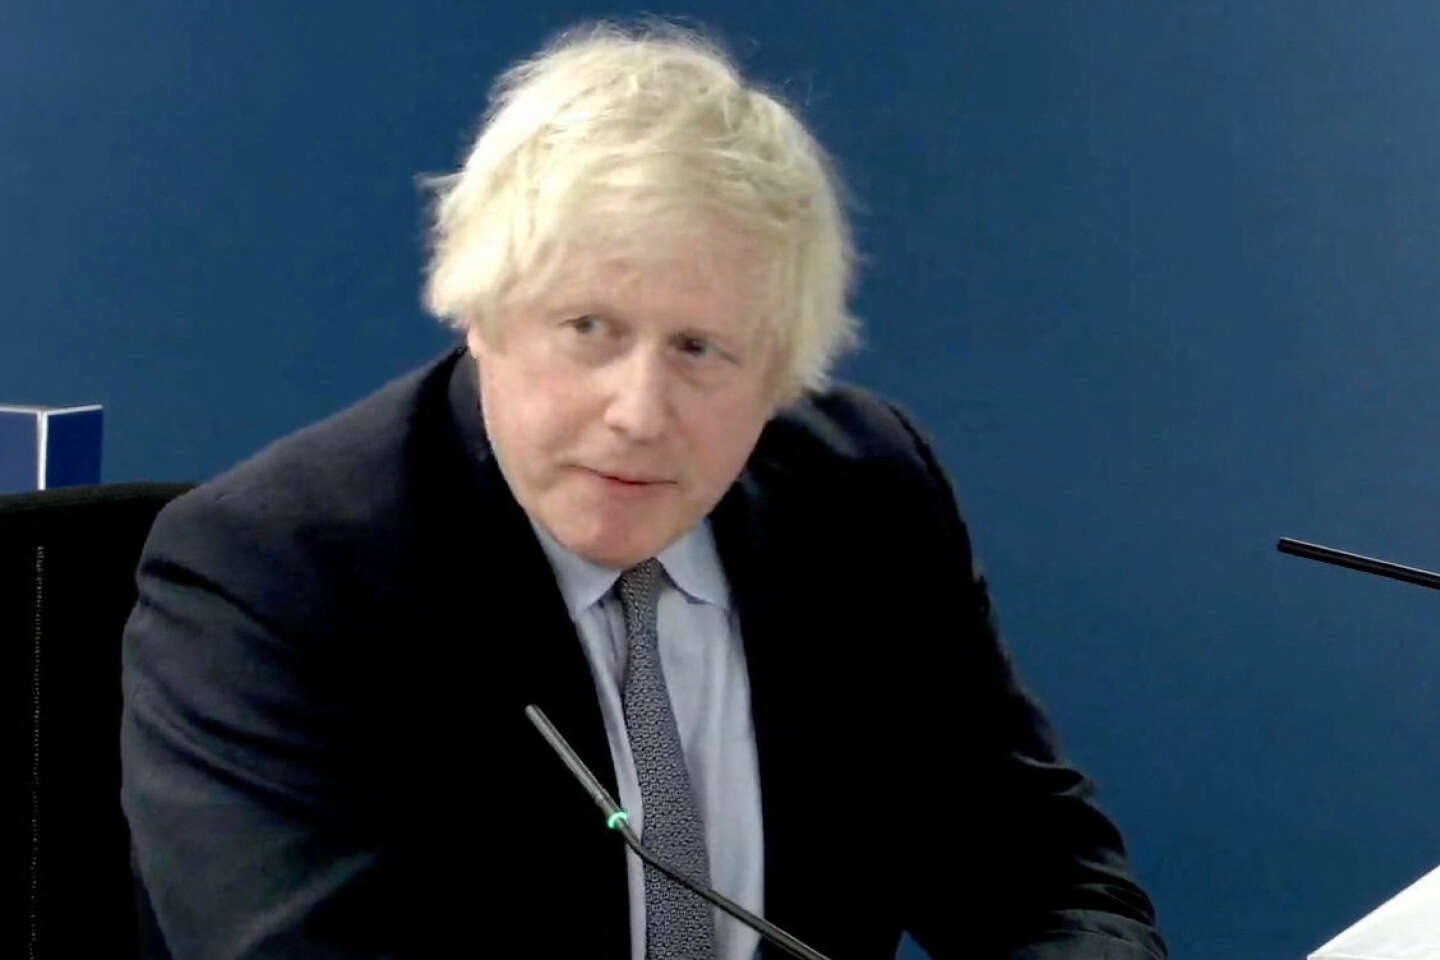 Boris Johnson présente ses excuses aux familles des victimes du Covid-19